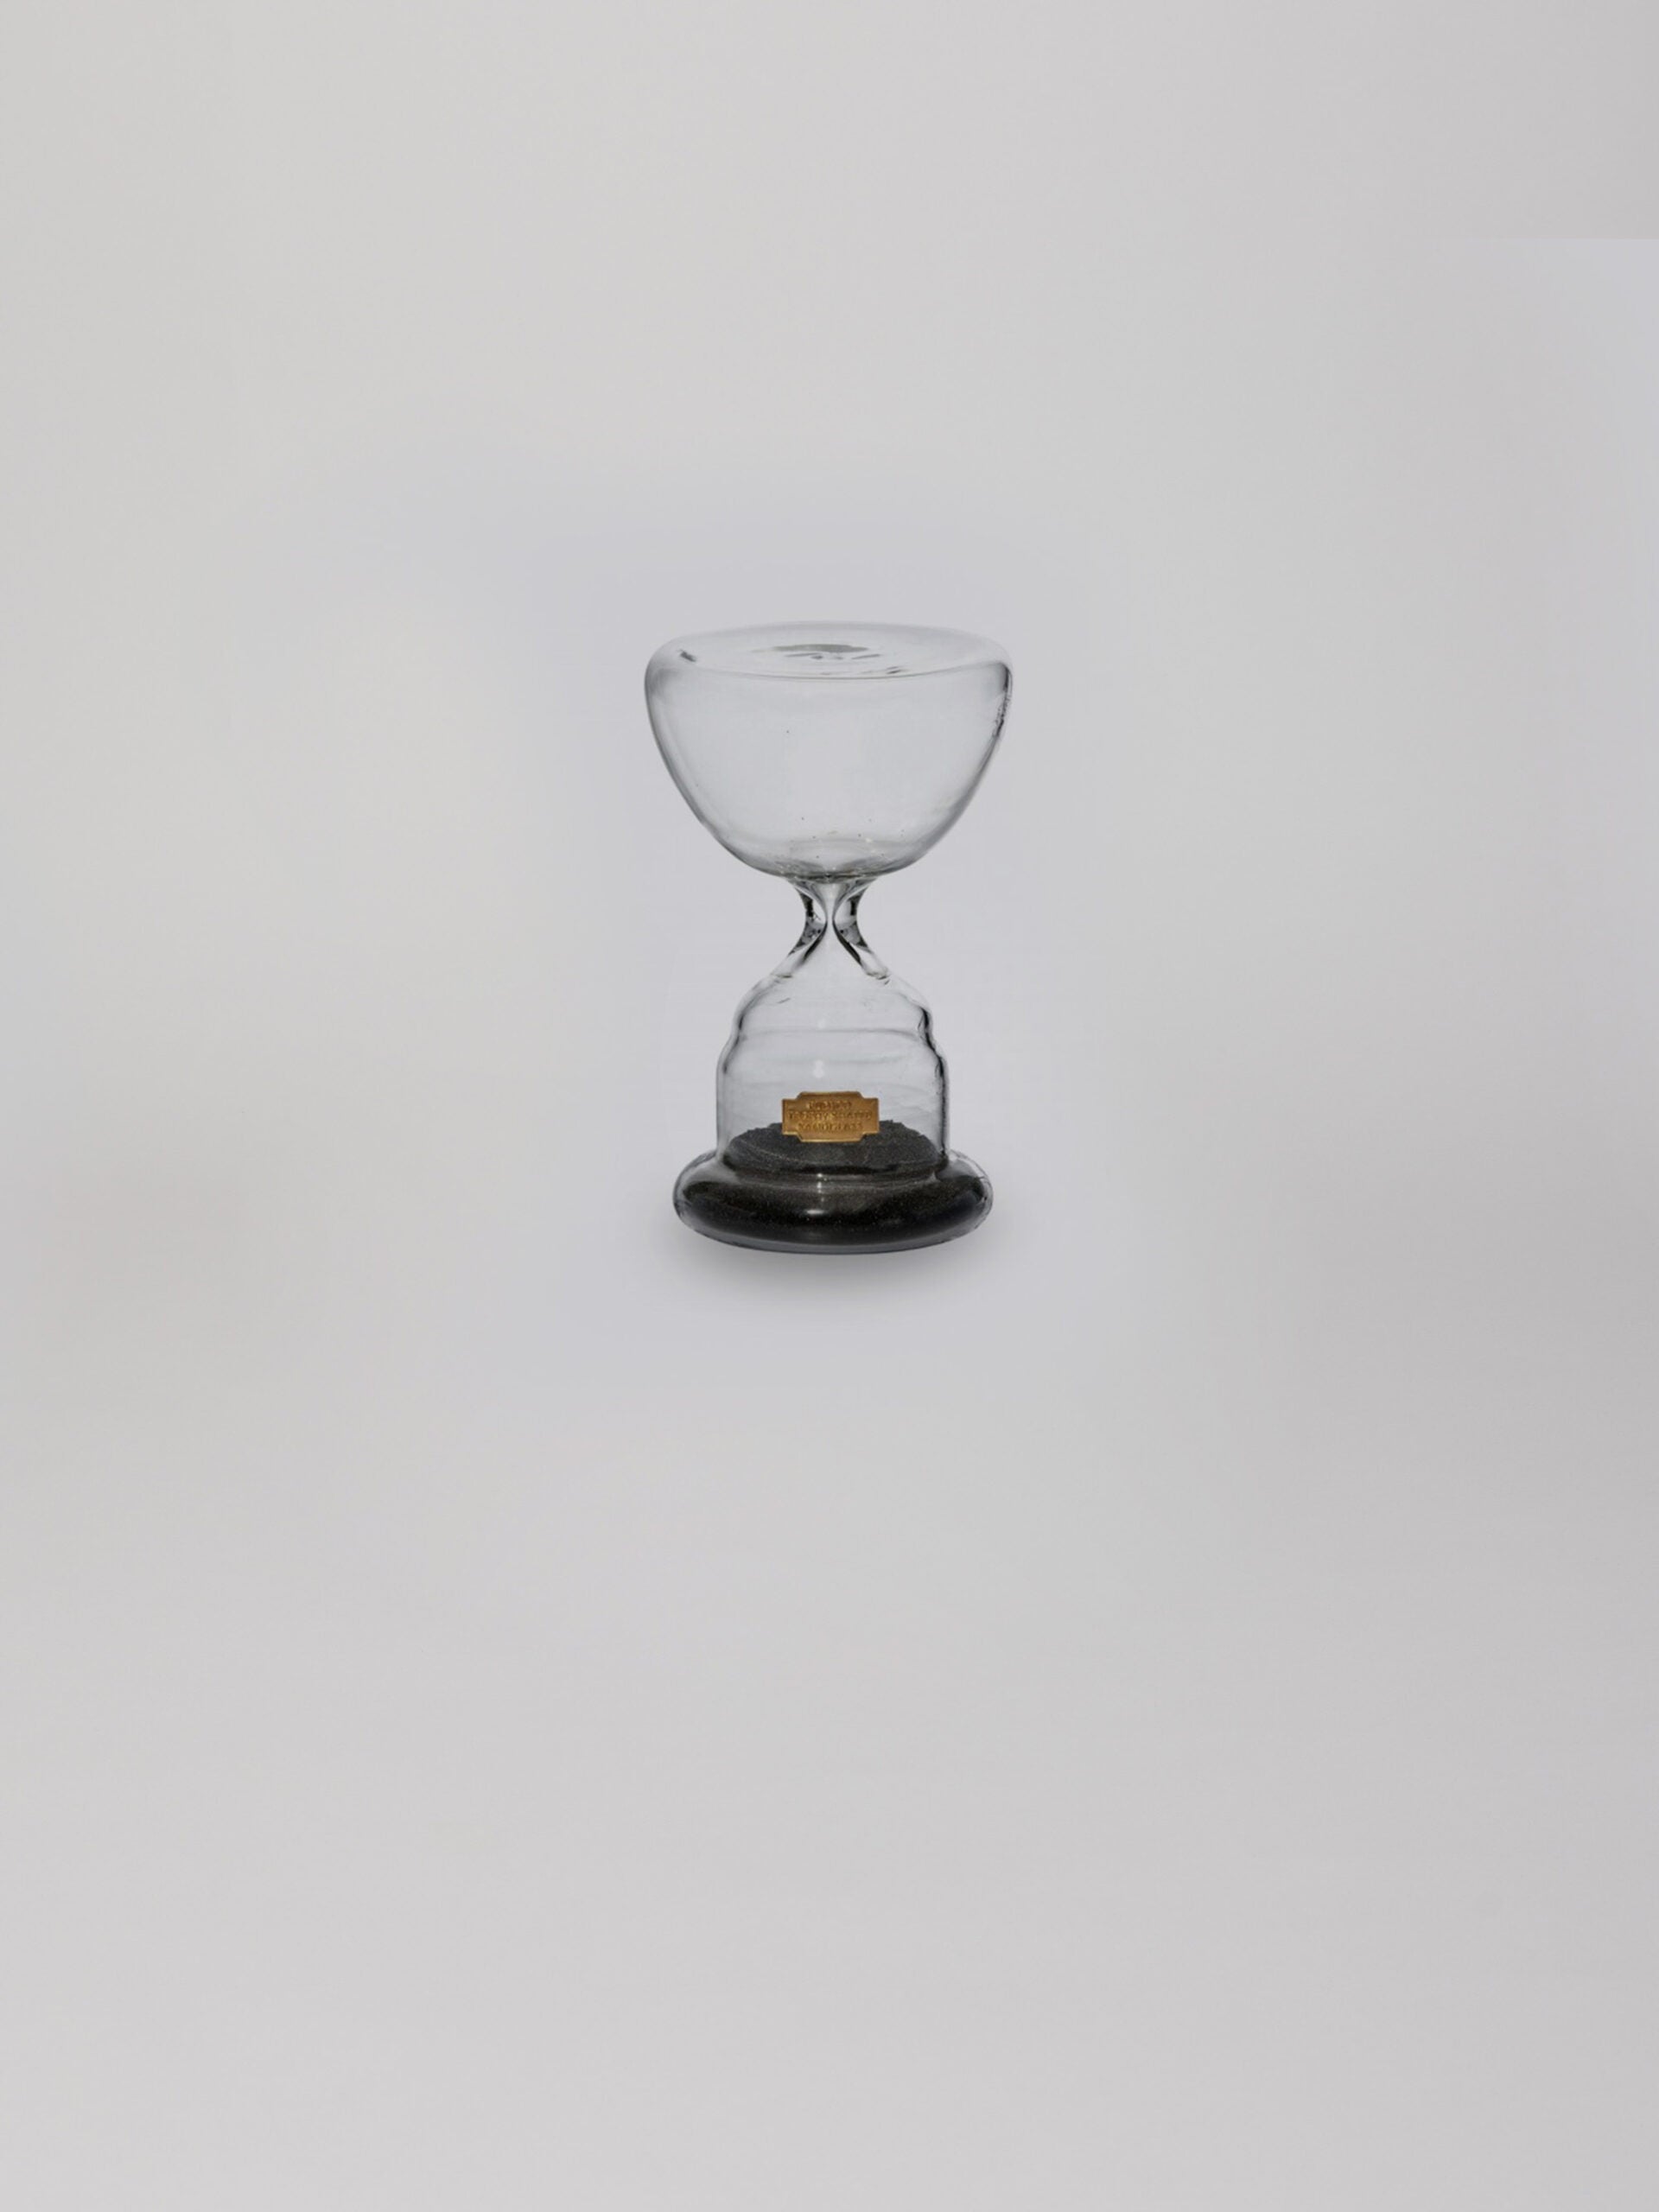 שעון חול מזכוכית בצבע שחור עם חול בחלקו התחתון על עומד על רקע אפור בהיר